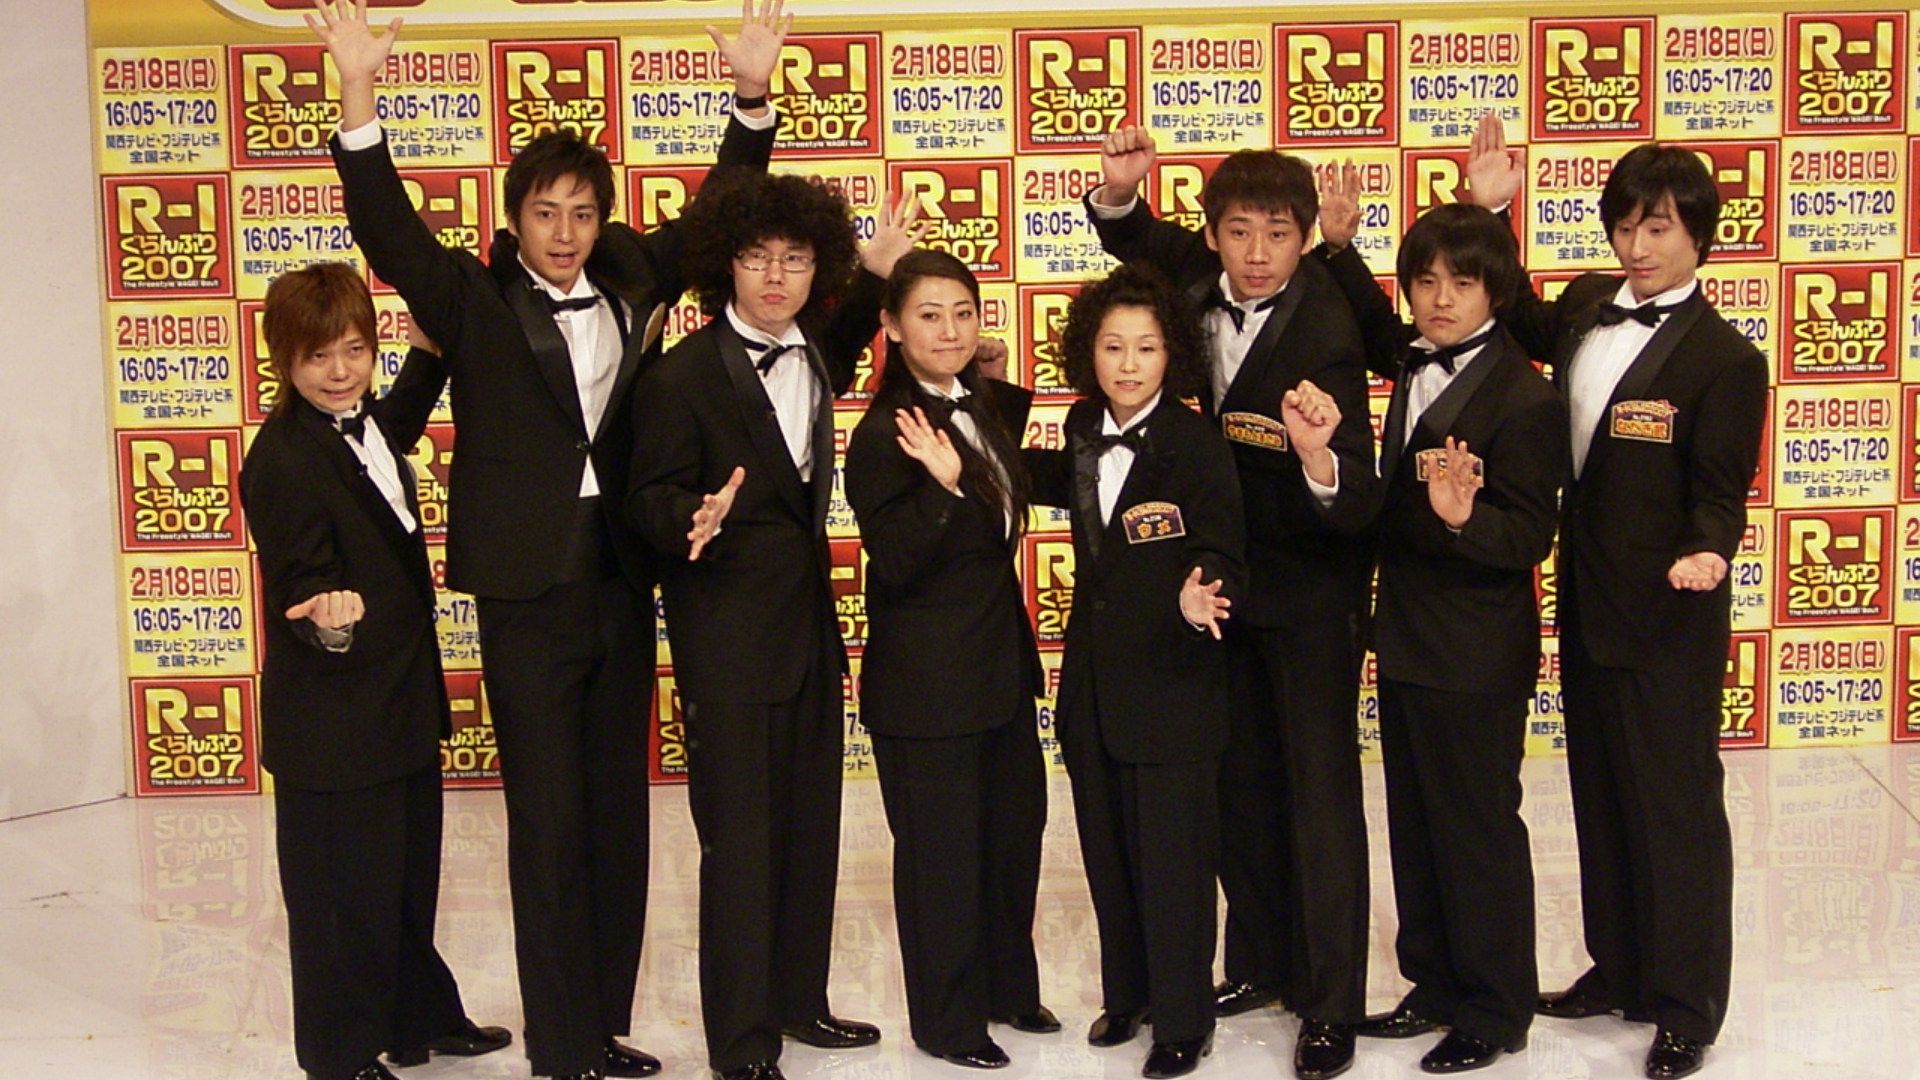 R-1ぐらんぷり2007 [DVD]